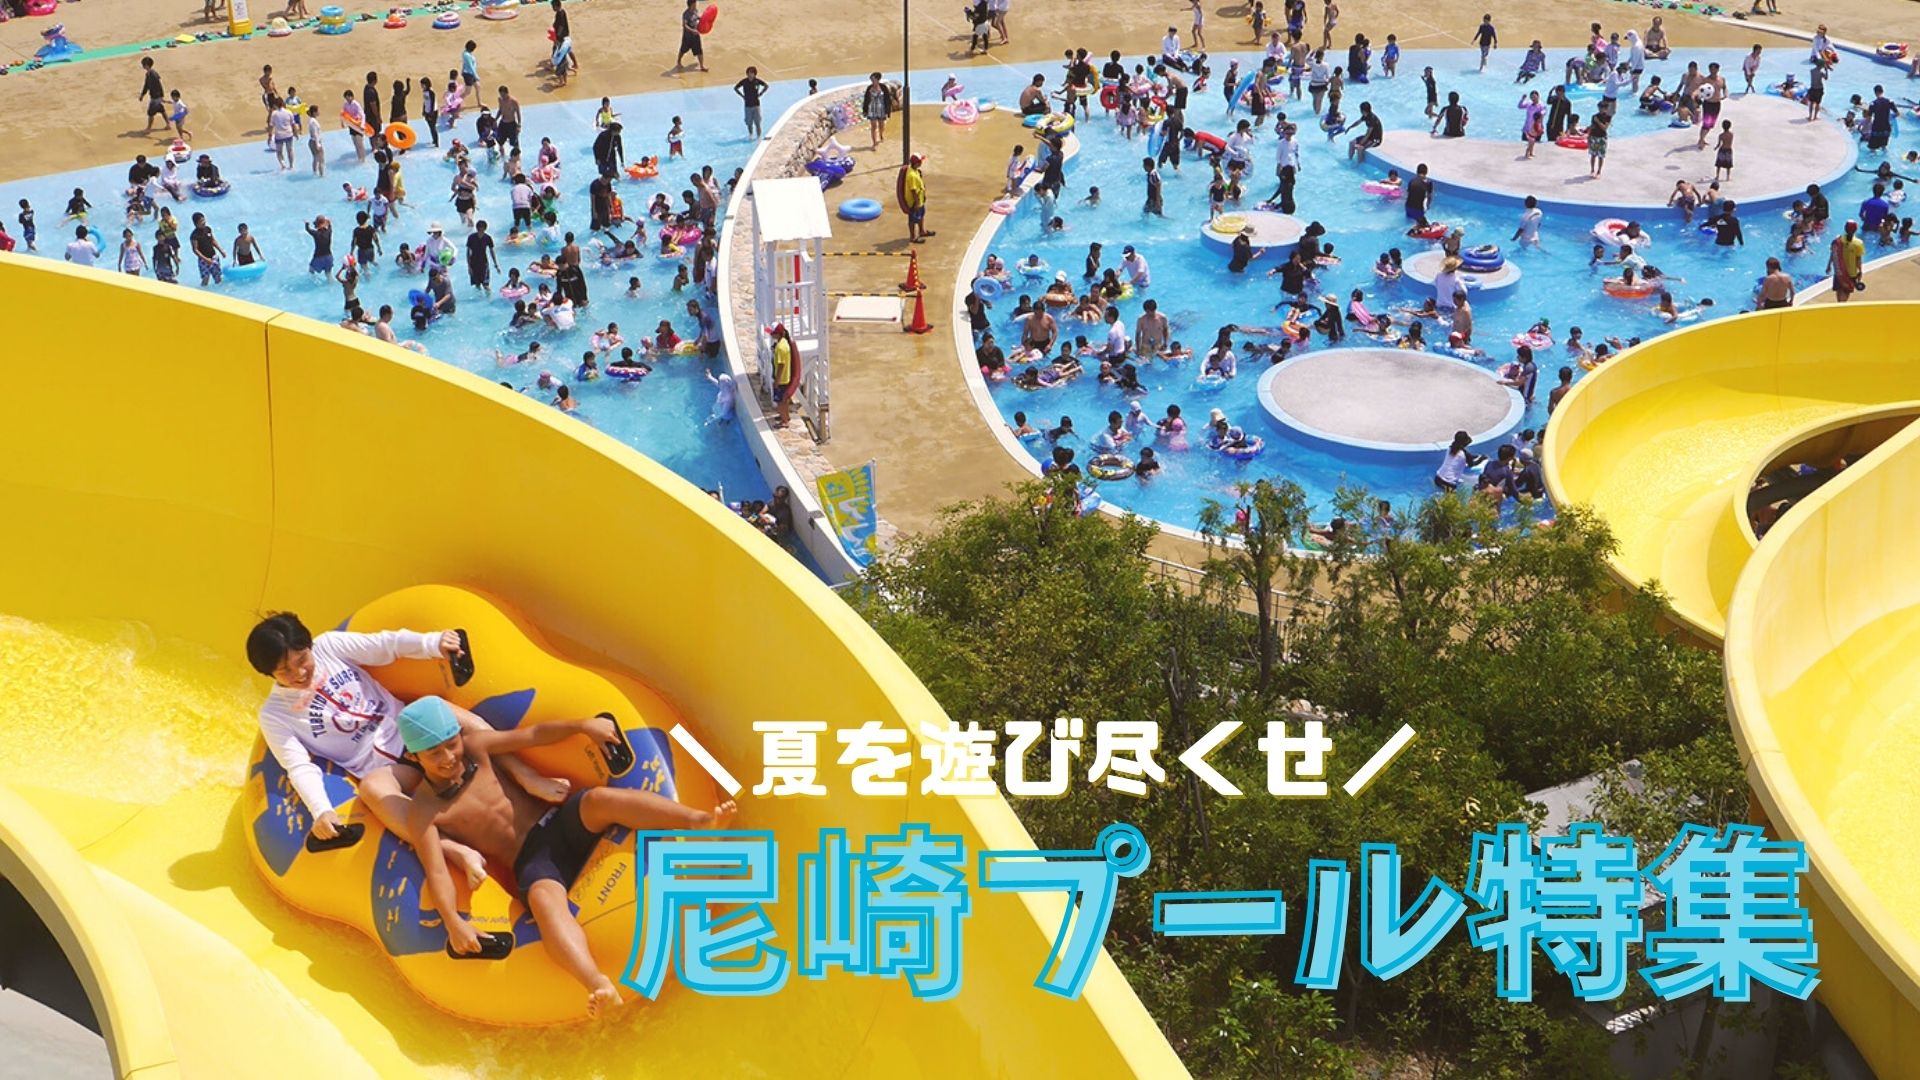 夏休みと言ったらプールでしょ 尼崎プール特集 あまがさき観光局 公式